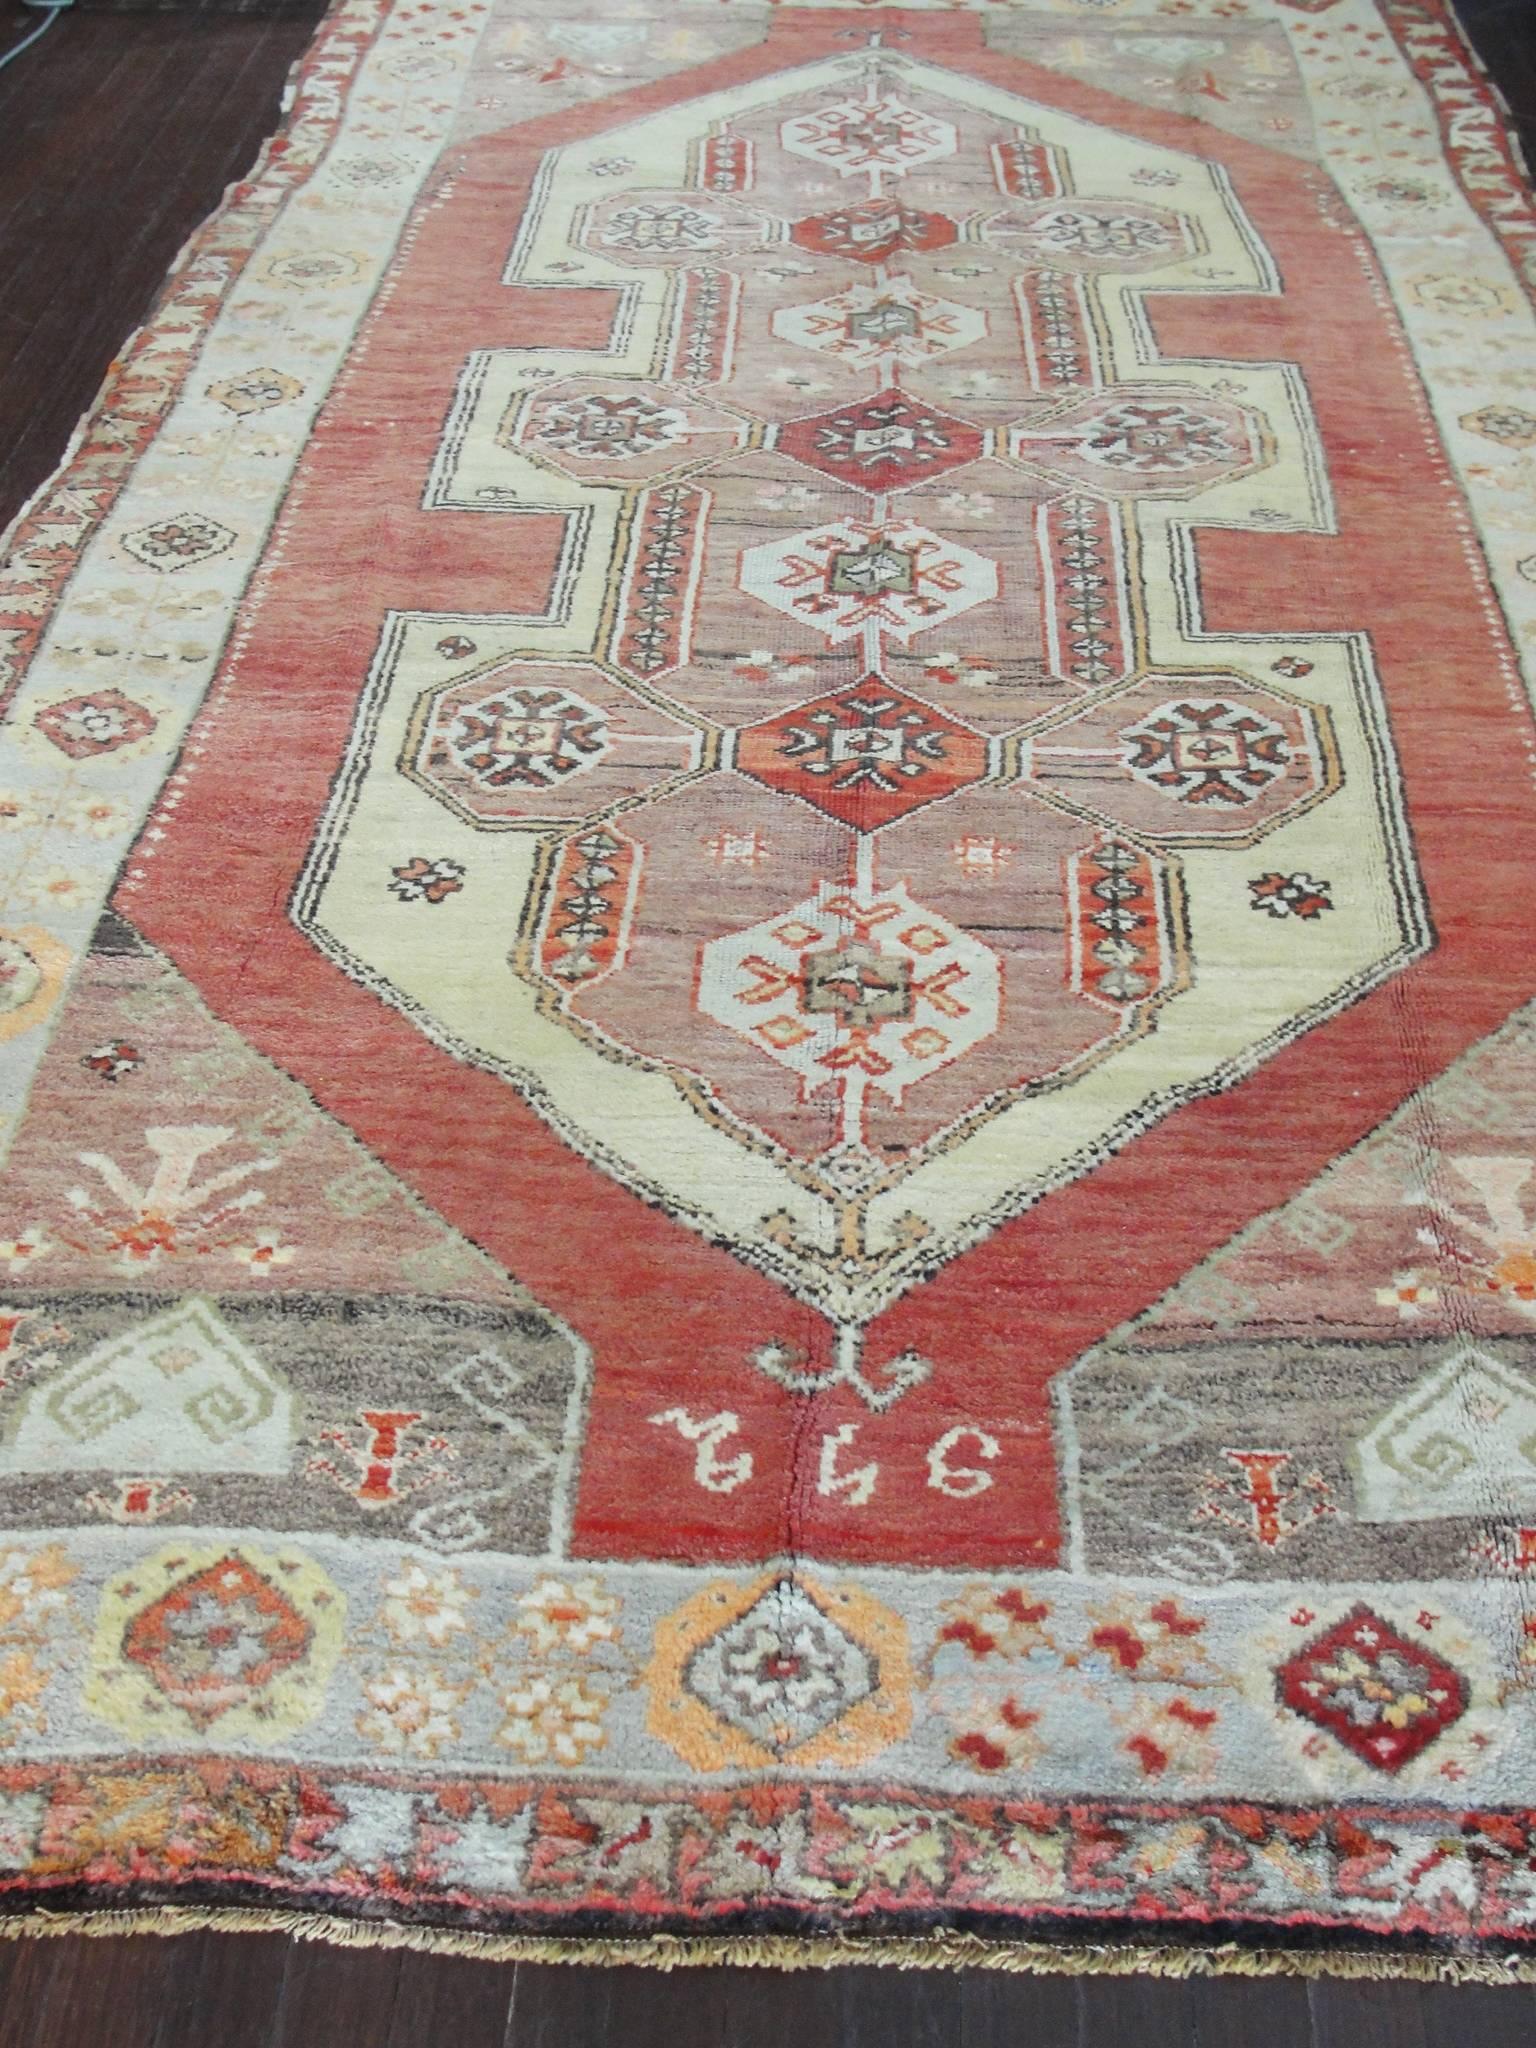  Oushak Carpet 1